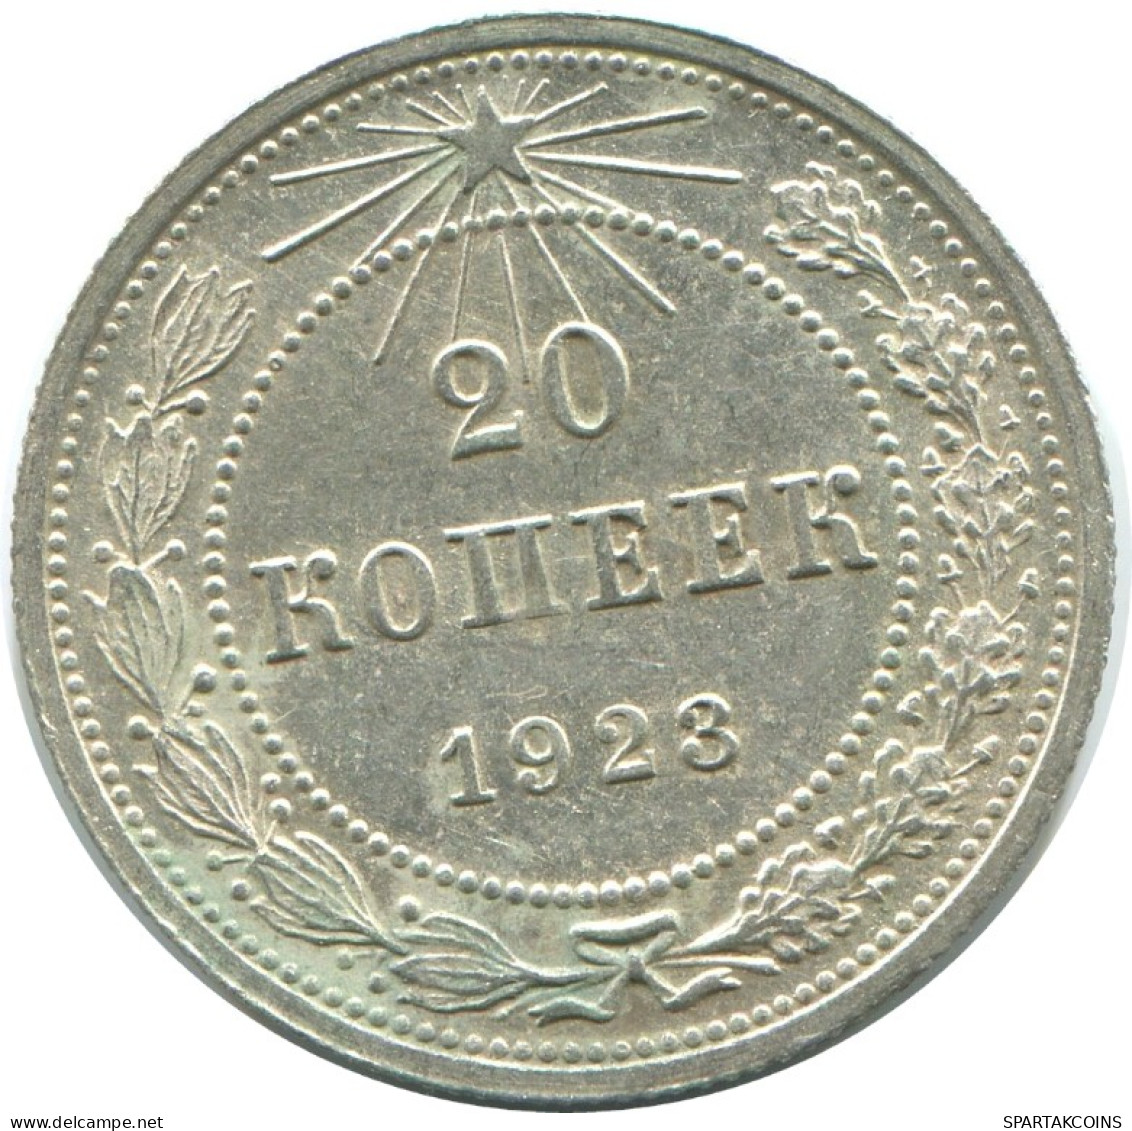 20 KOPEKS 1923 RUSSIA RSFSR SILVER Coin HIGH GRADE #AF558.4.U.A - Russland